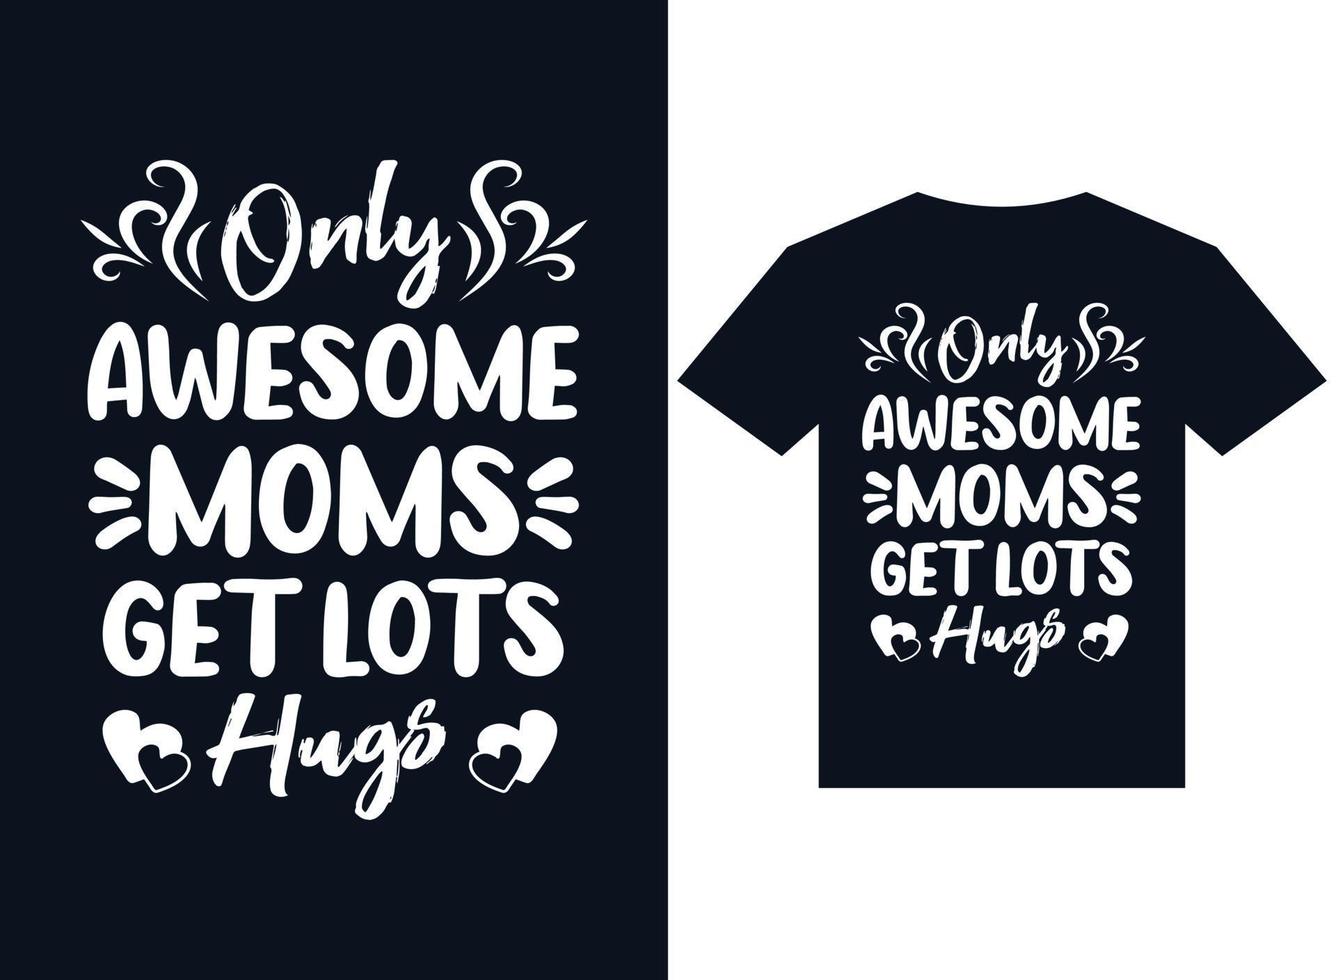 solo la mamma fantastica ottiene il vettore di tipografia del design della t-shirt dell'abbraccio